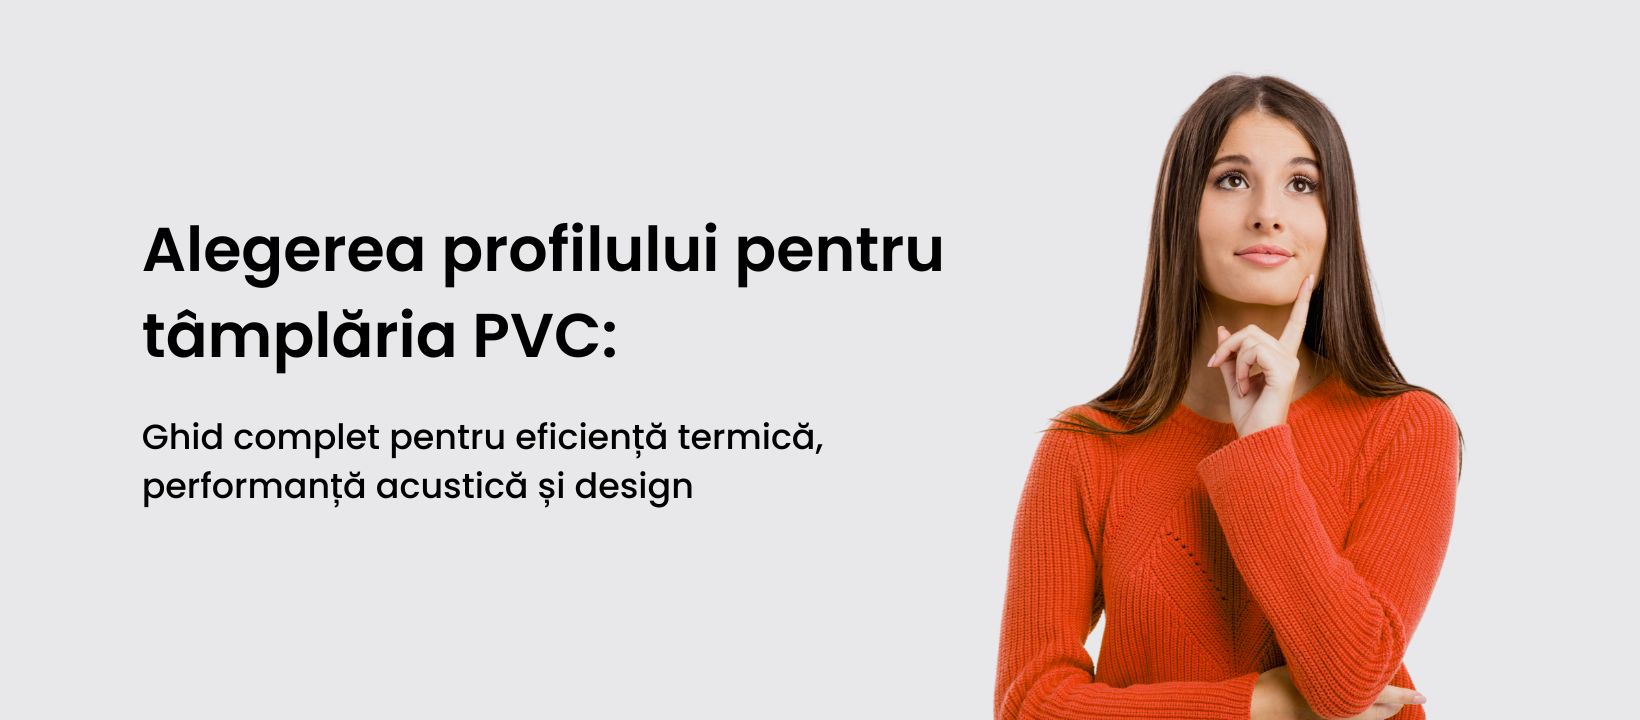 Alegerea profilului pentru tâmplăria PVC: Ghid complet pentru eficiență termică, performanță acustică și design